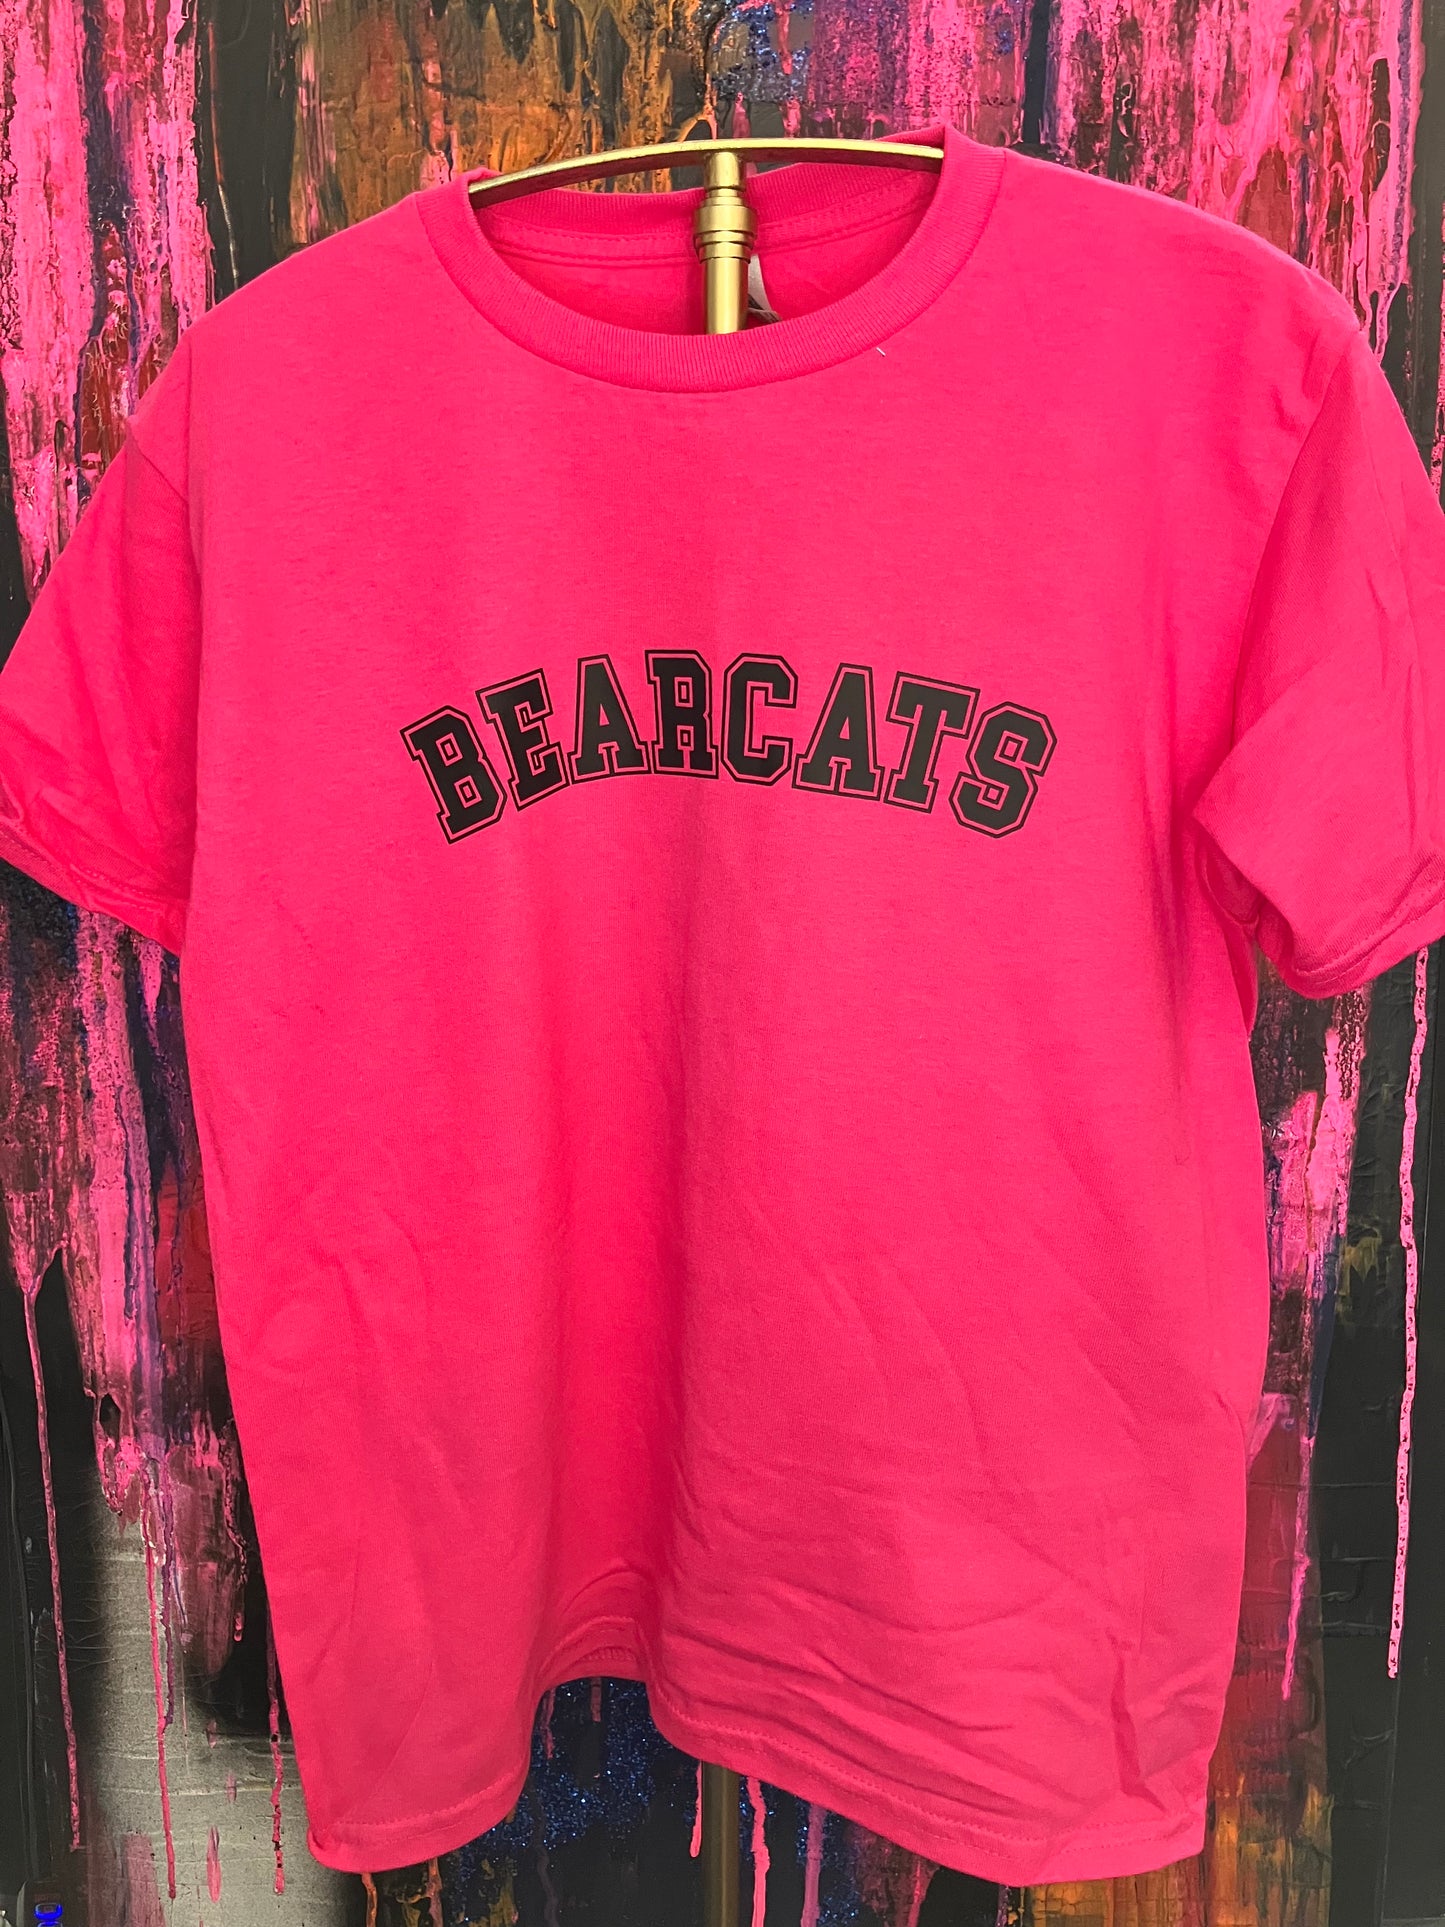 Bearcat Pink Tee